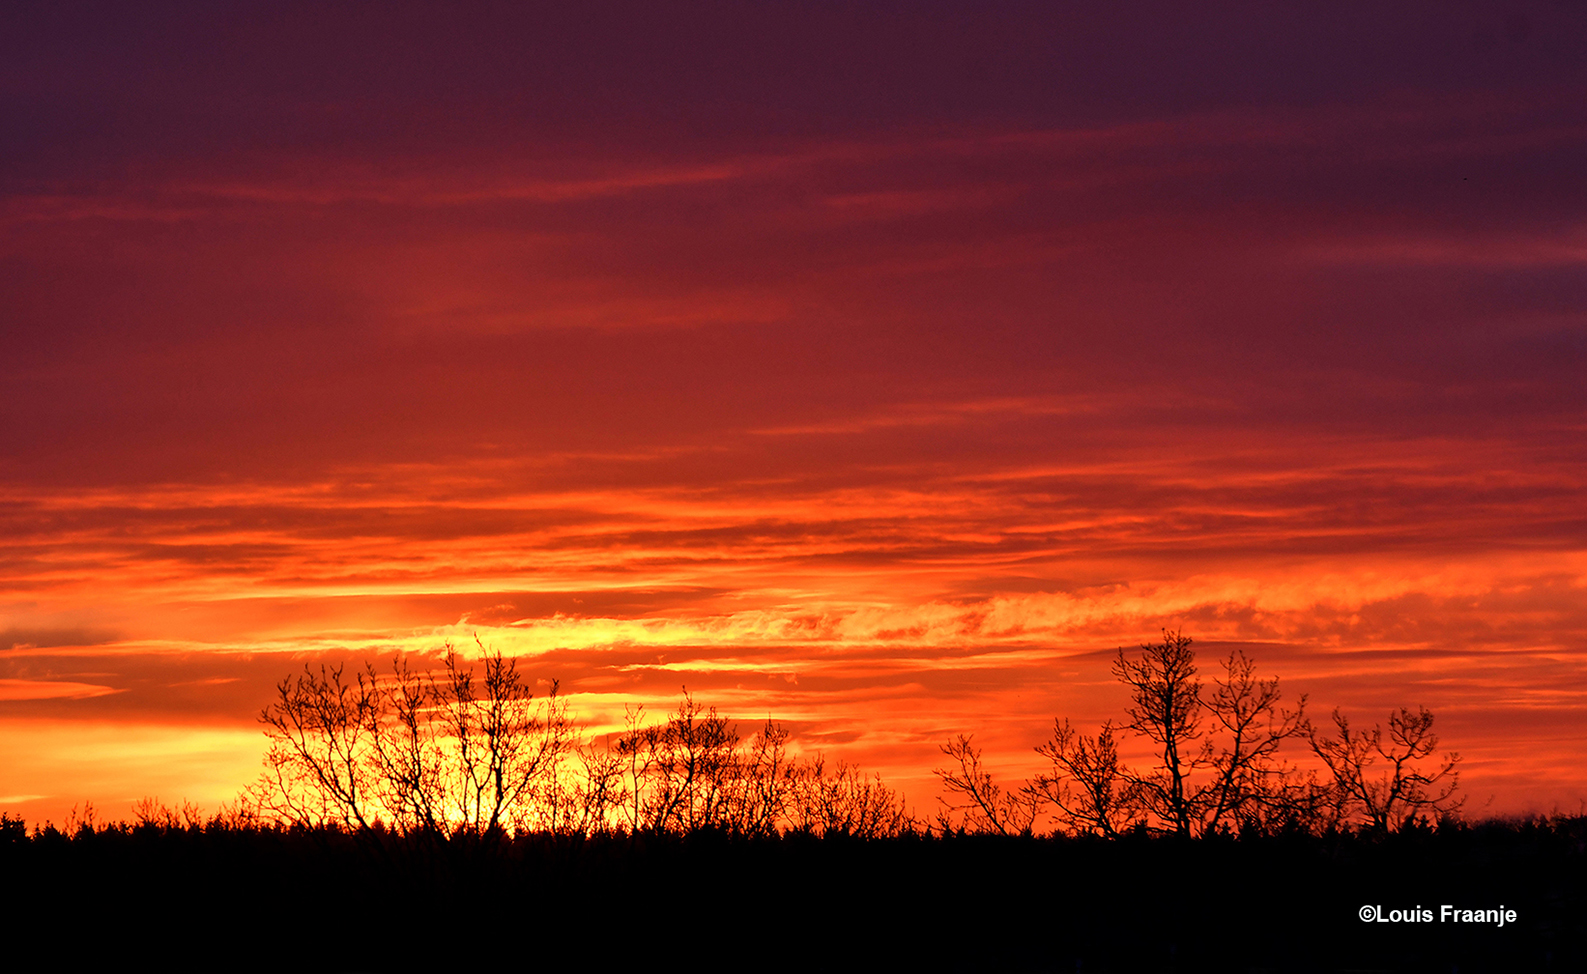 Net voordat de morgenzon verscheen, kleurde de ochtendhemel vlammend rood - Foto: ©Louis Fraanje